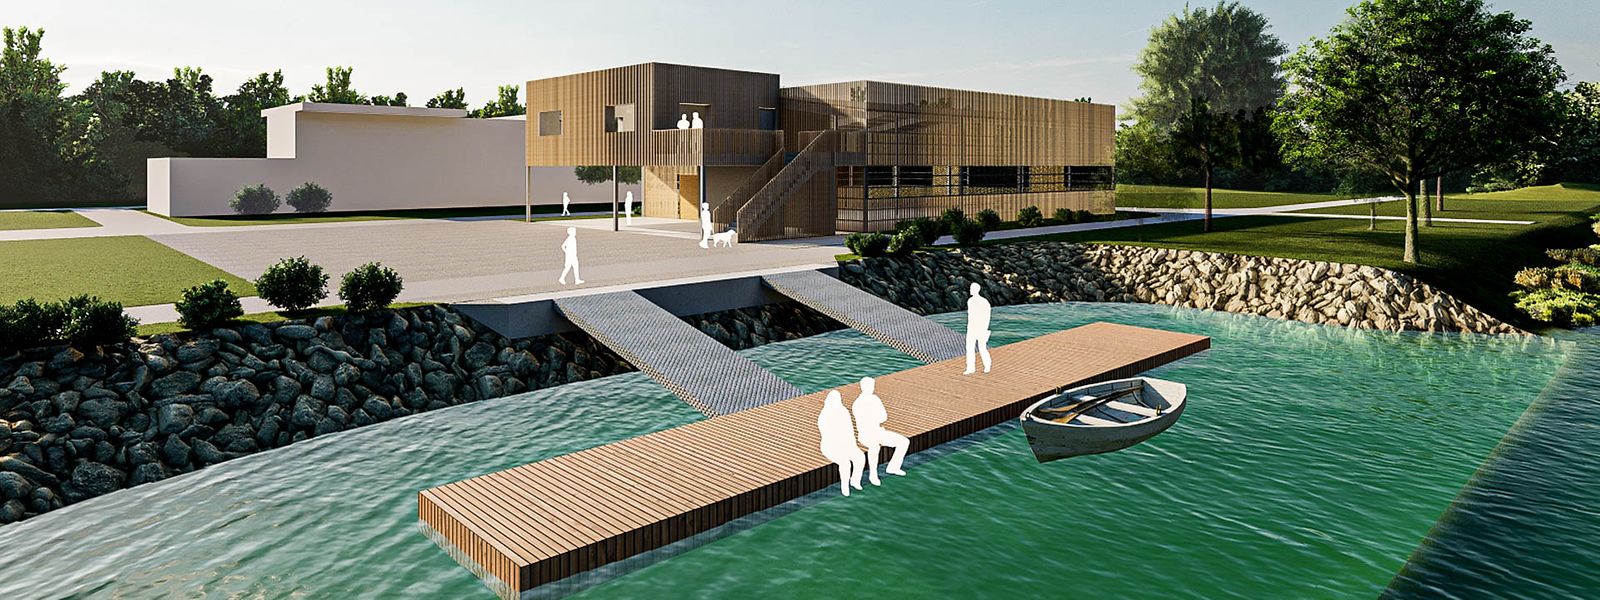 Das nationale Rudersportzentrum soll in der Nähe der Hafenmeisterei entstehen und über einen Ponton zum Einstieg in die Boote verfügen.